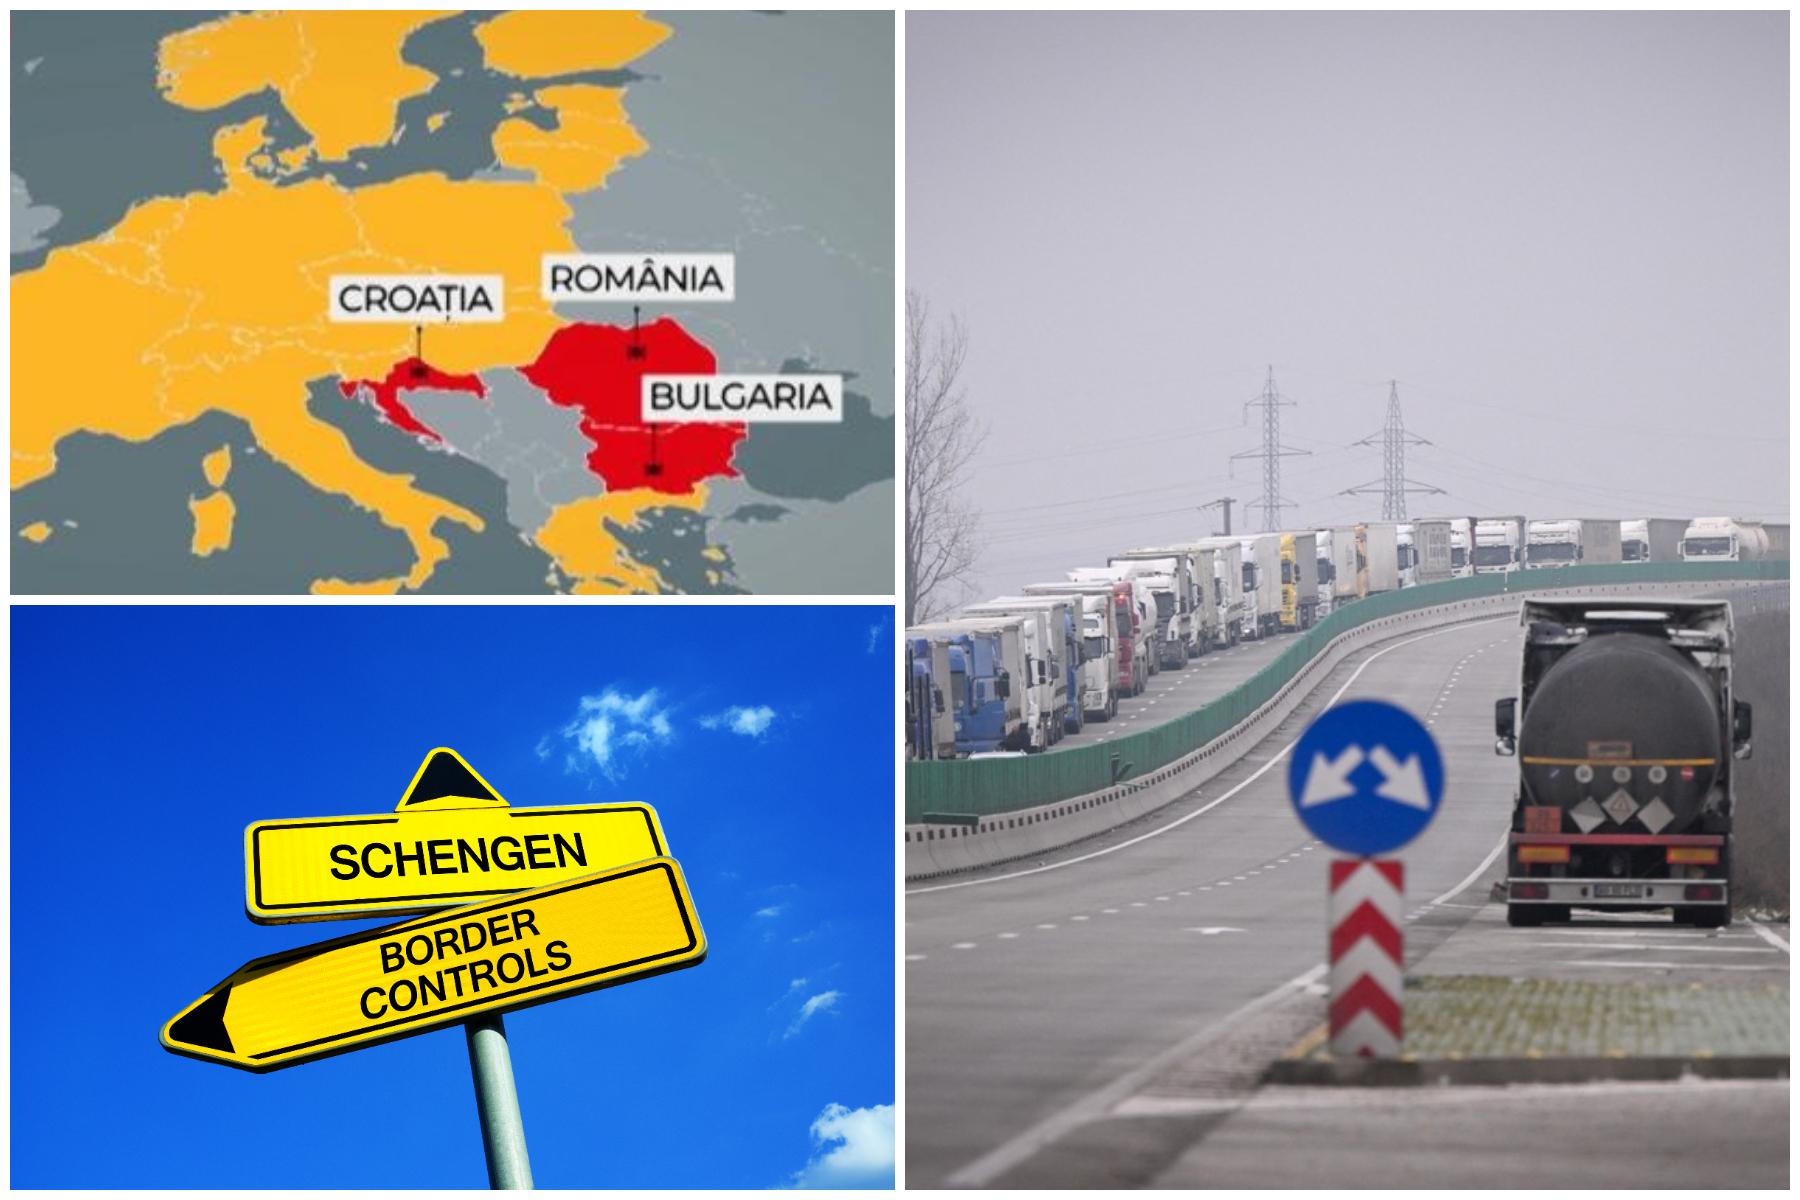 Şansa de care poate profita România, ca să intre în Schengen anul acesta